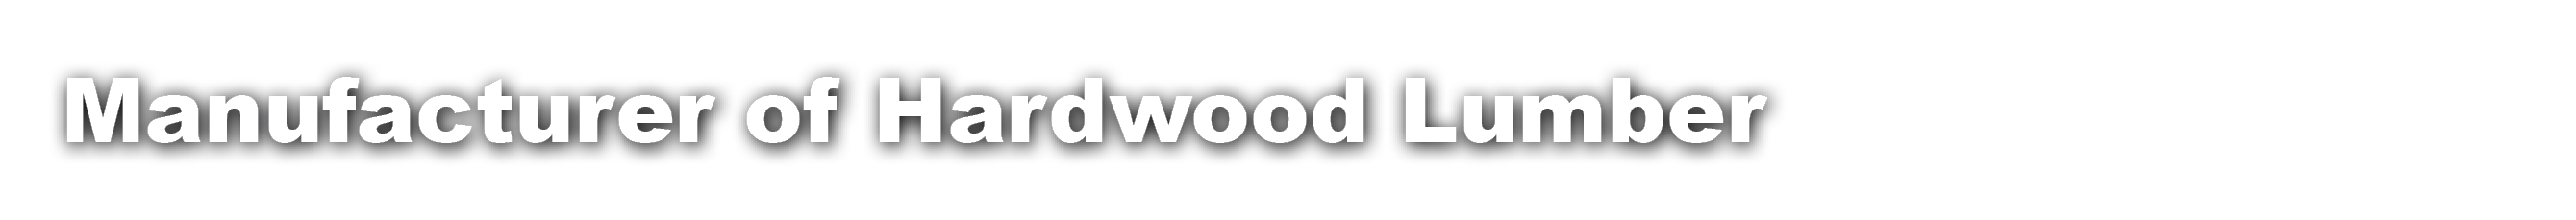 Manufacturer of Hardwood Lumber